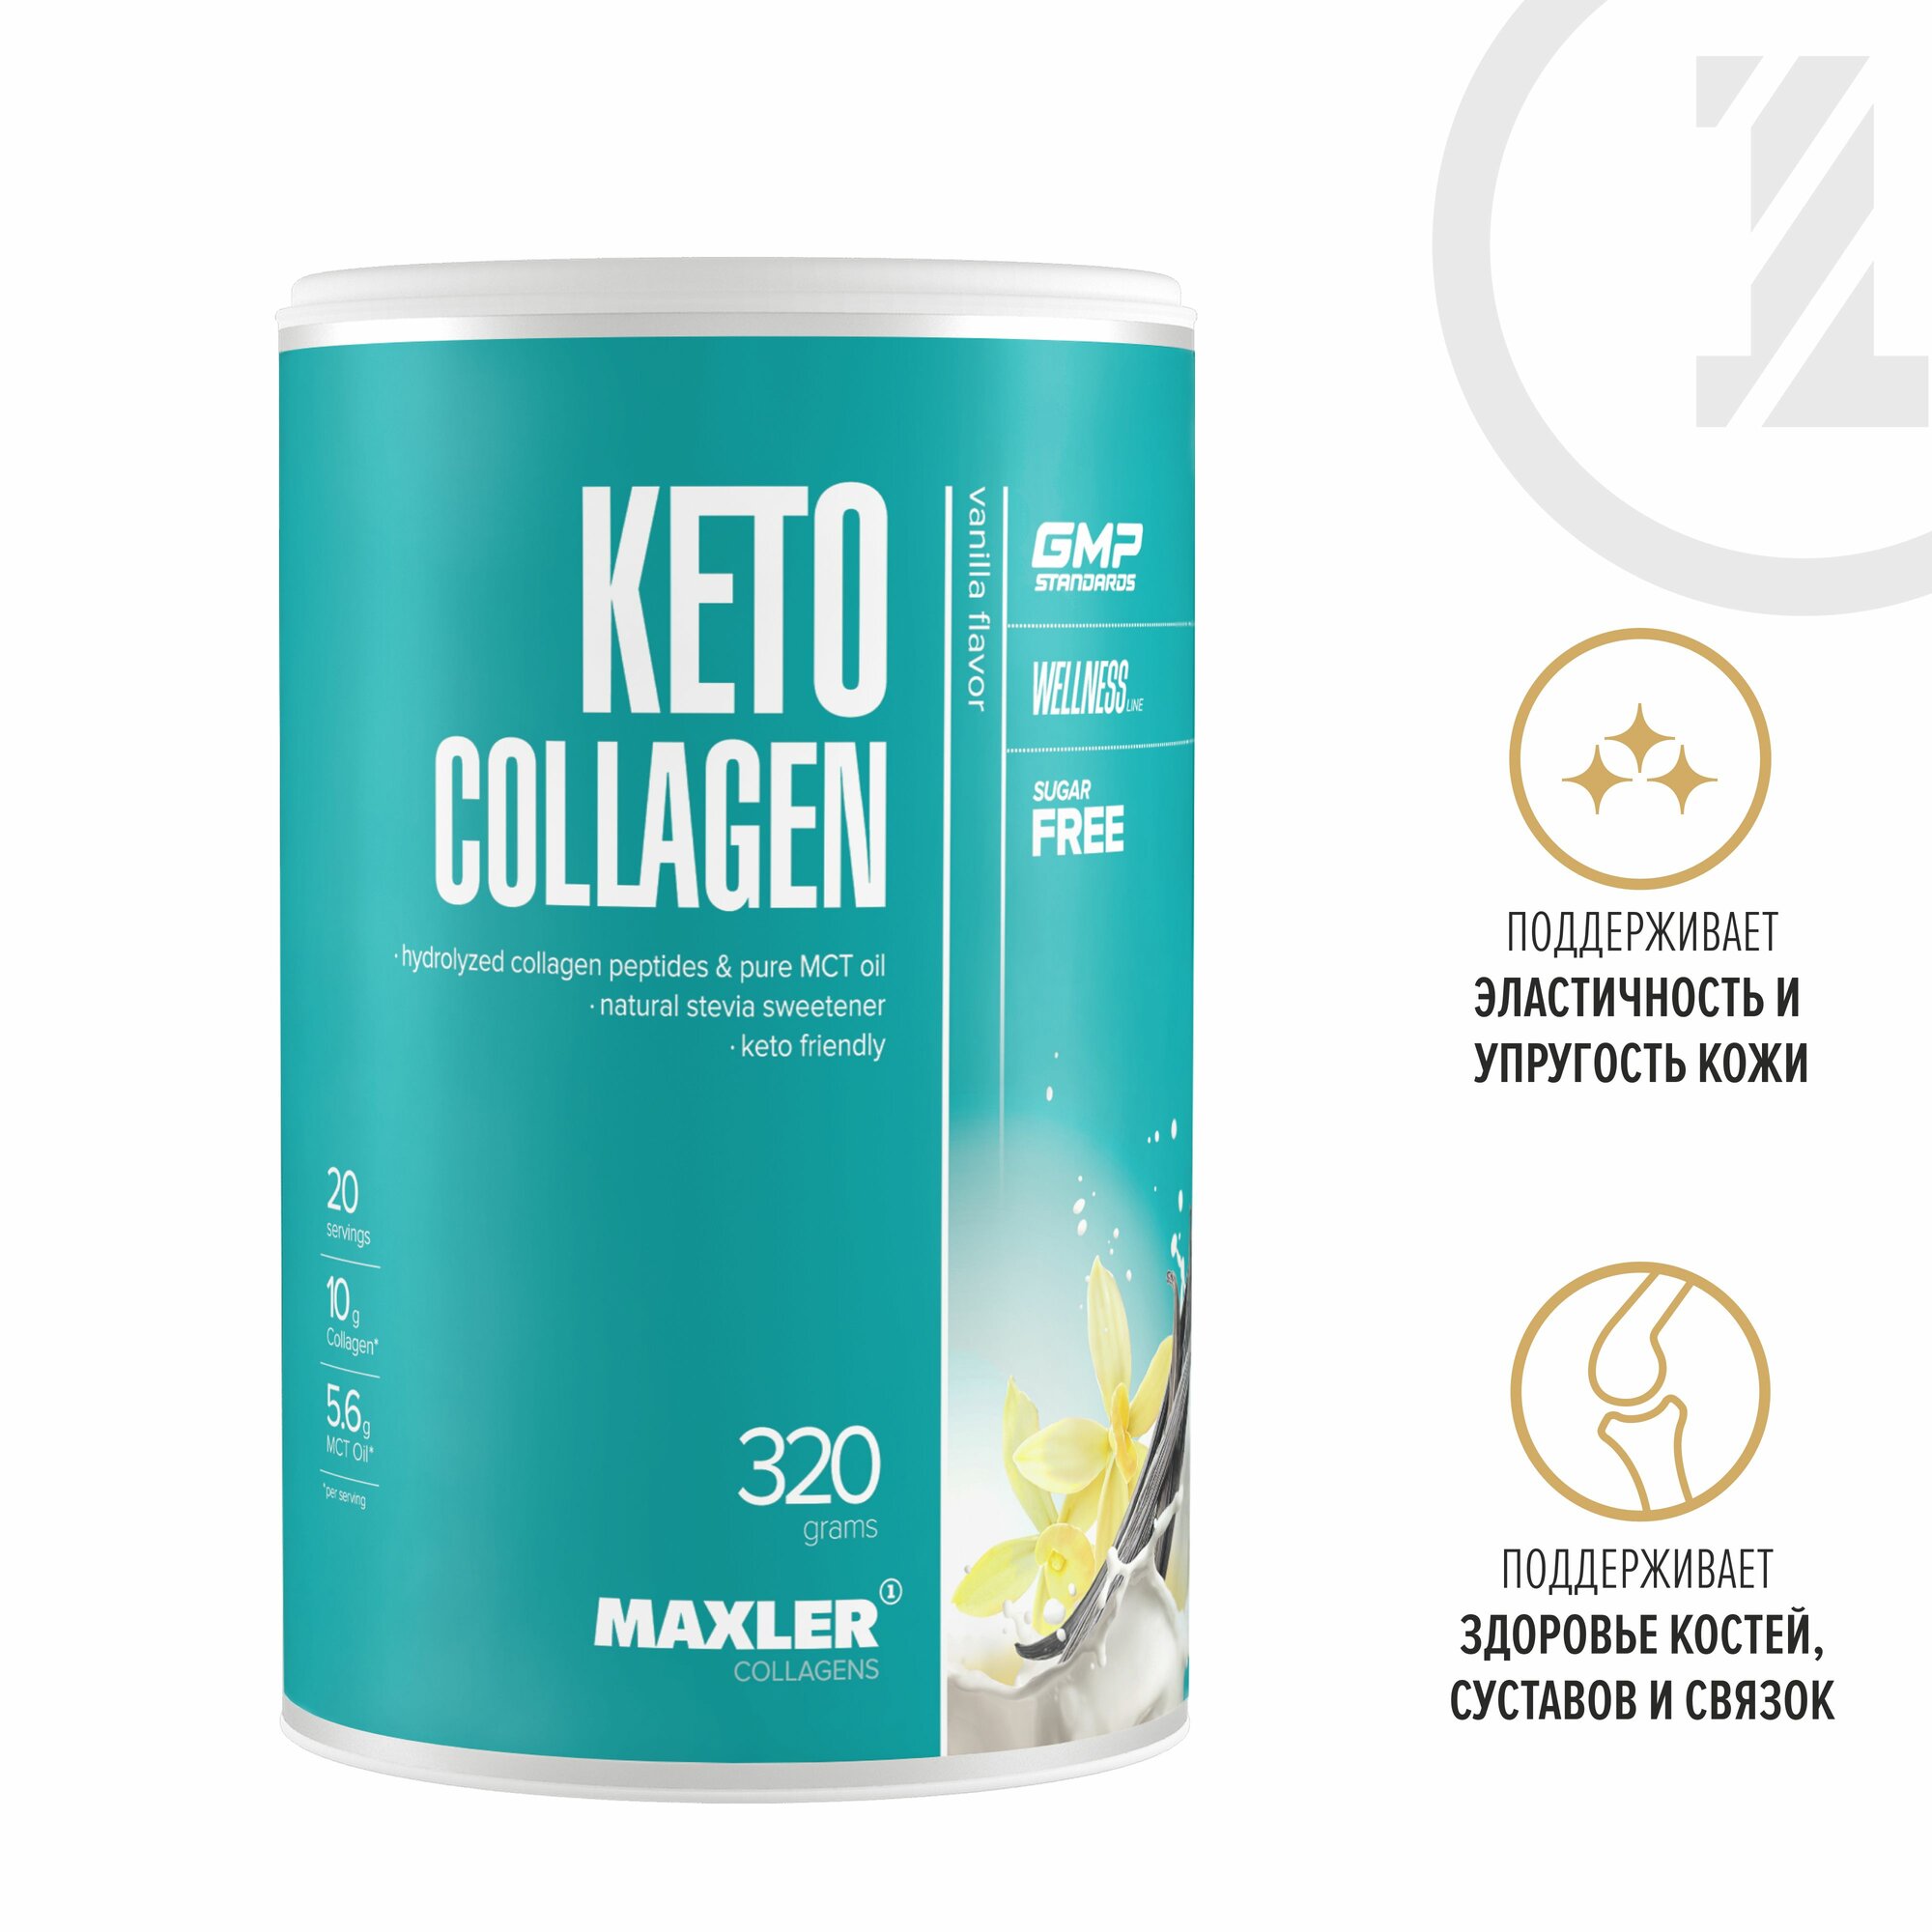 Кето коллаген Maxler Keto Collagen ( Гидролизованный коллаген и чистое масло MCT) 320 г. - Ваниль